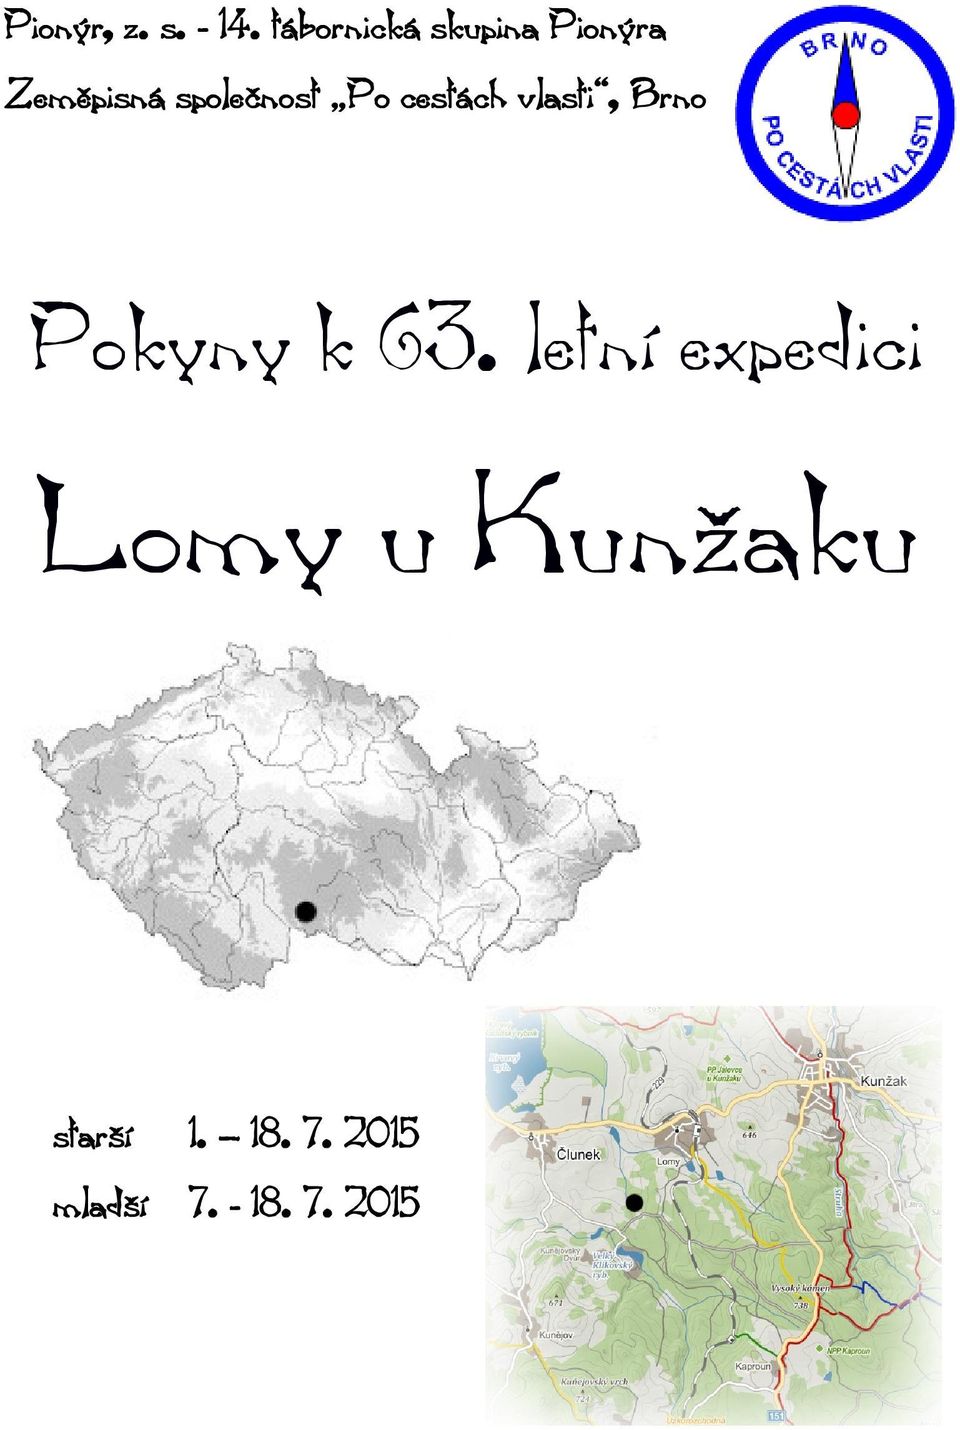 Pionýr, z. s tábornická skupina Pionýra Zeměpisná společnost Po cestách  vlasti, Brno. Pokyny k 63. letní expedici. - PDF Free Download